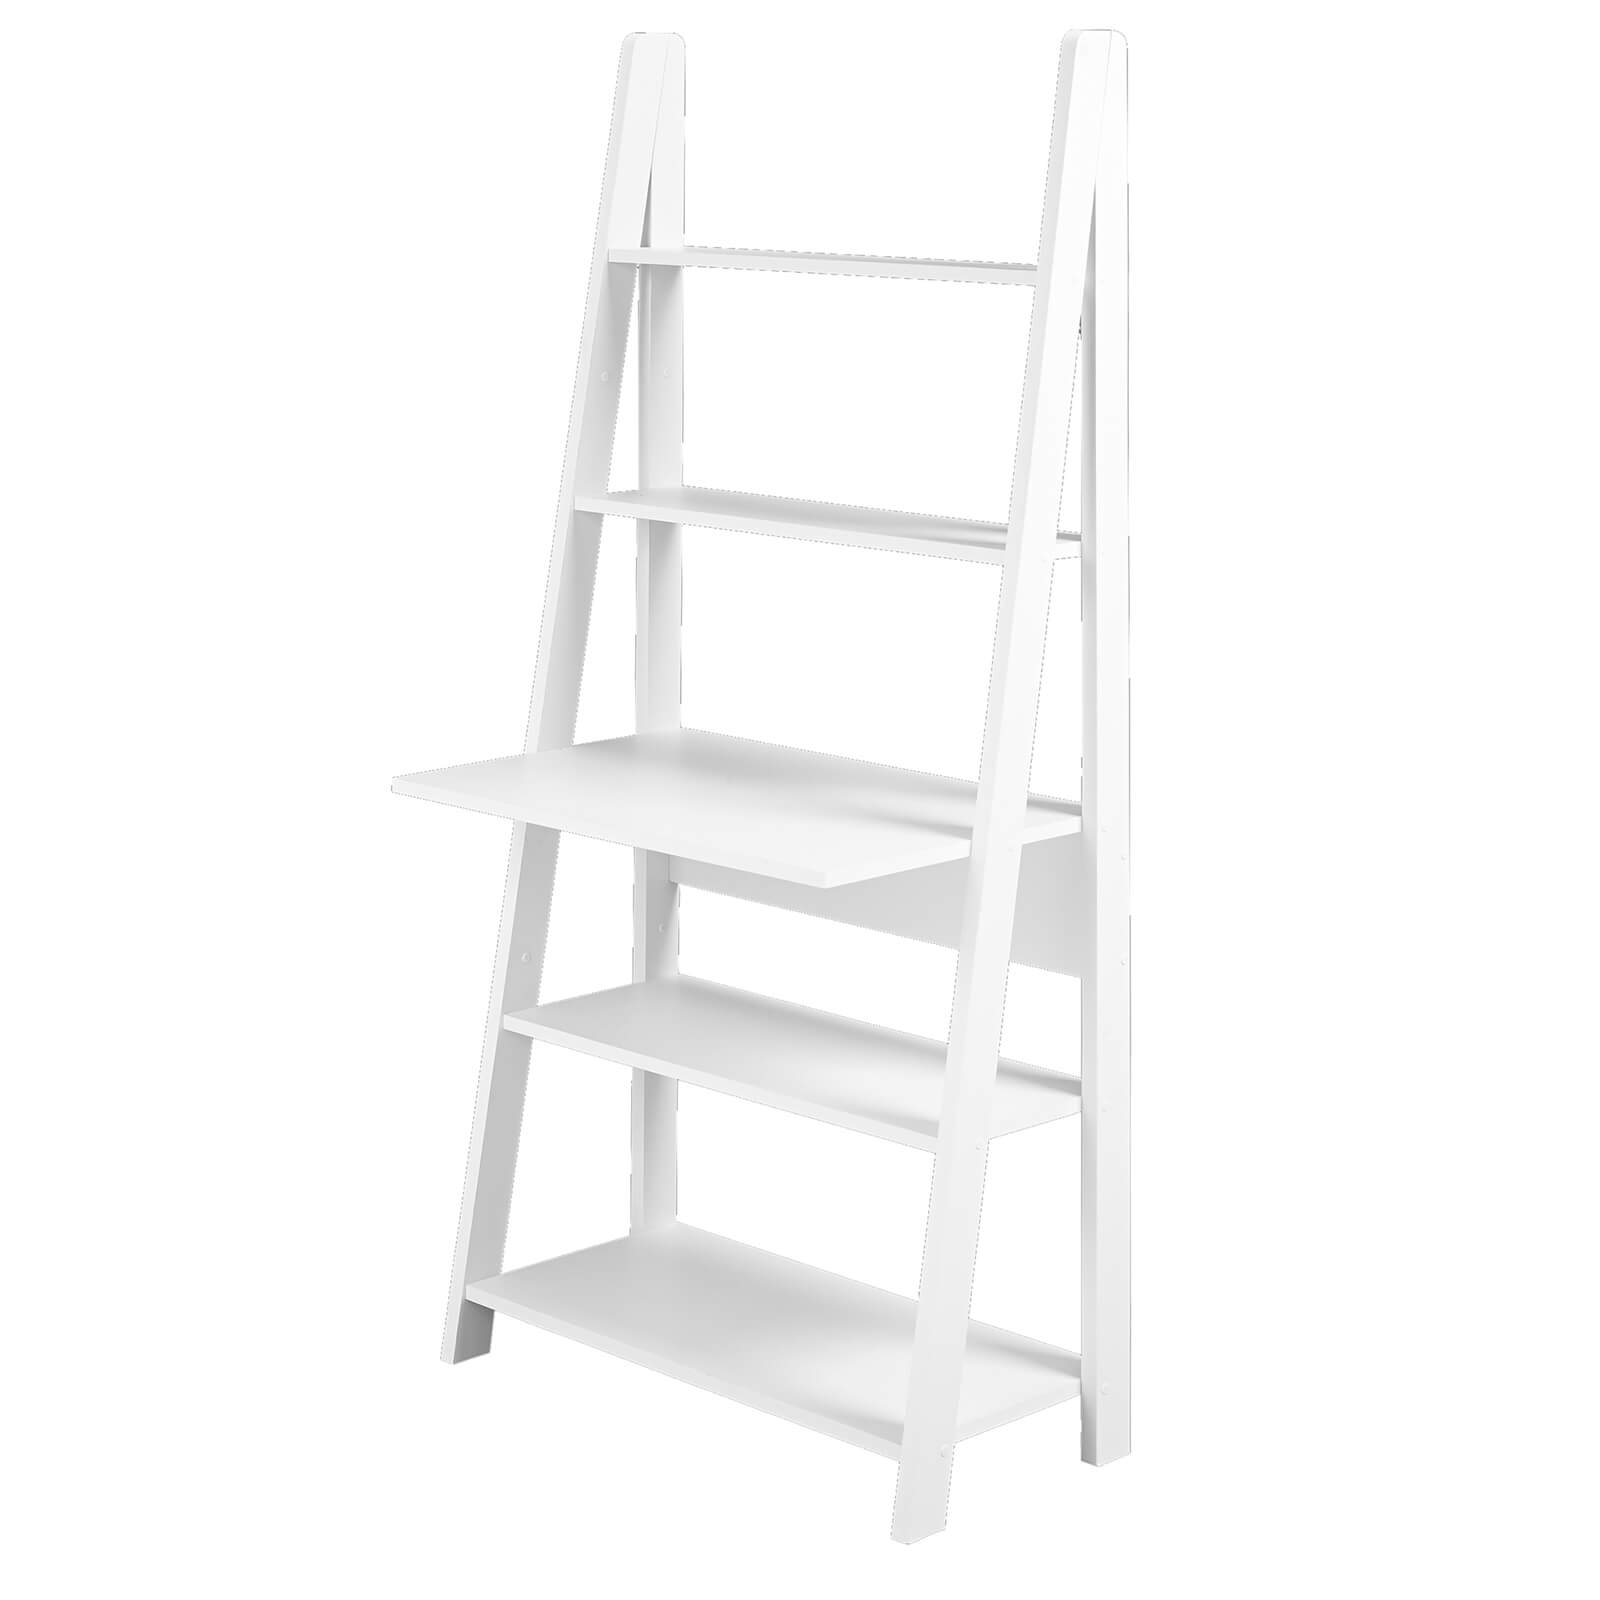 Tiva Ladder Desk - White